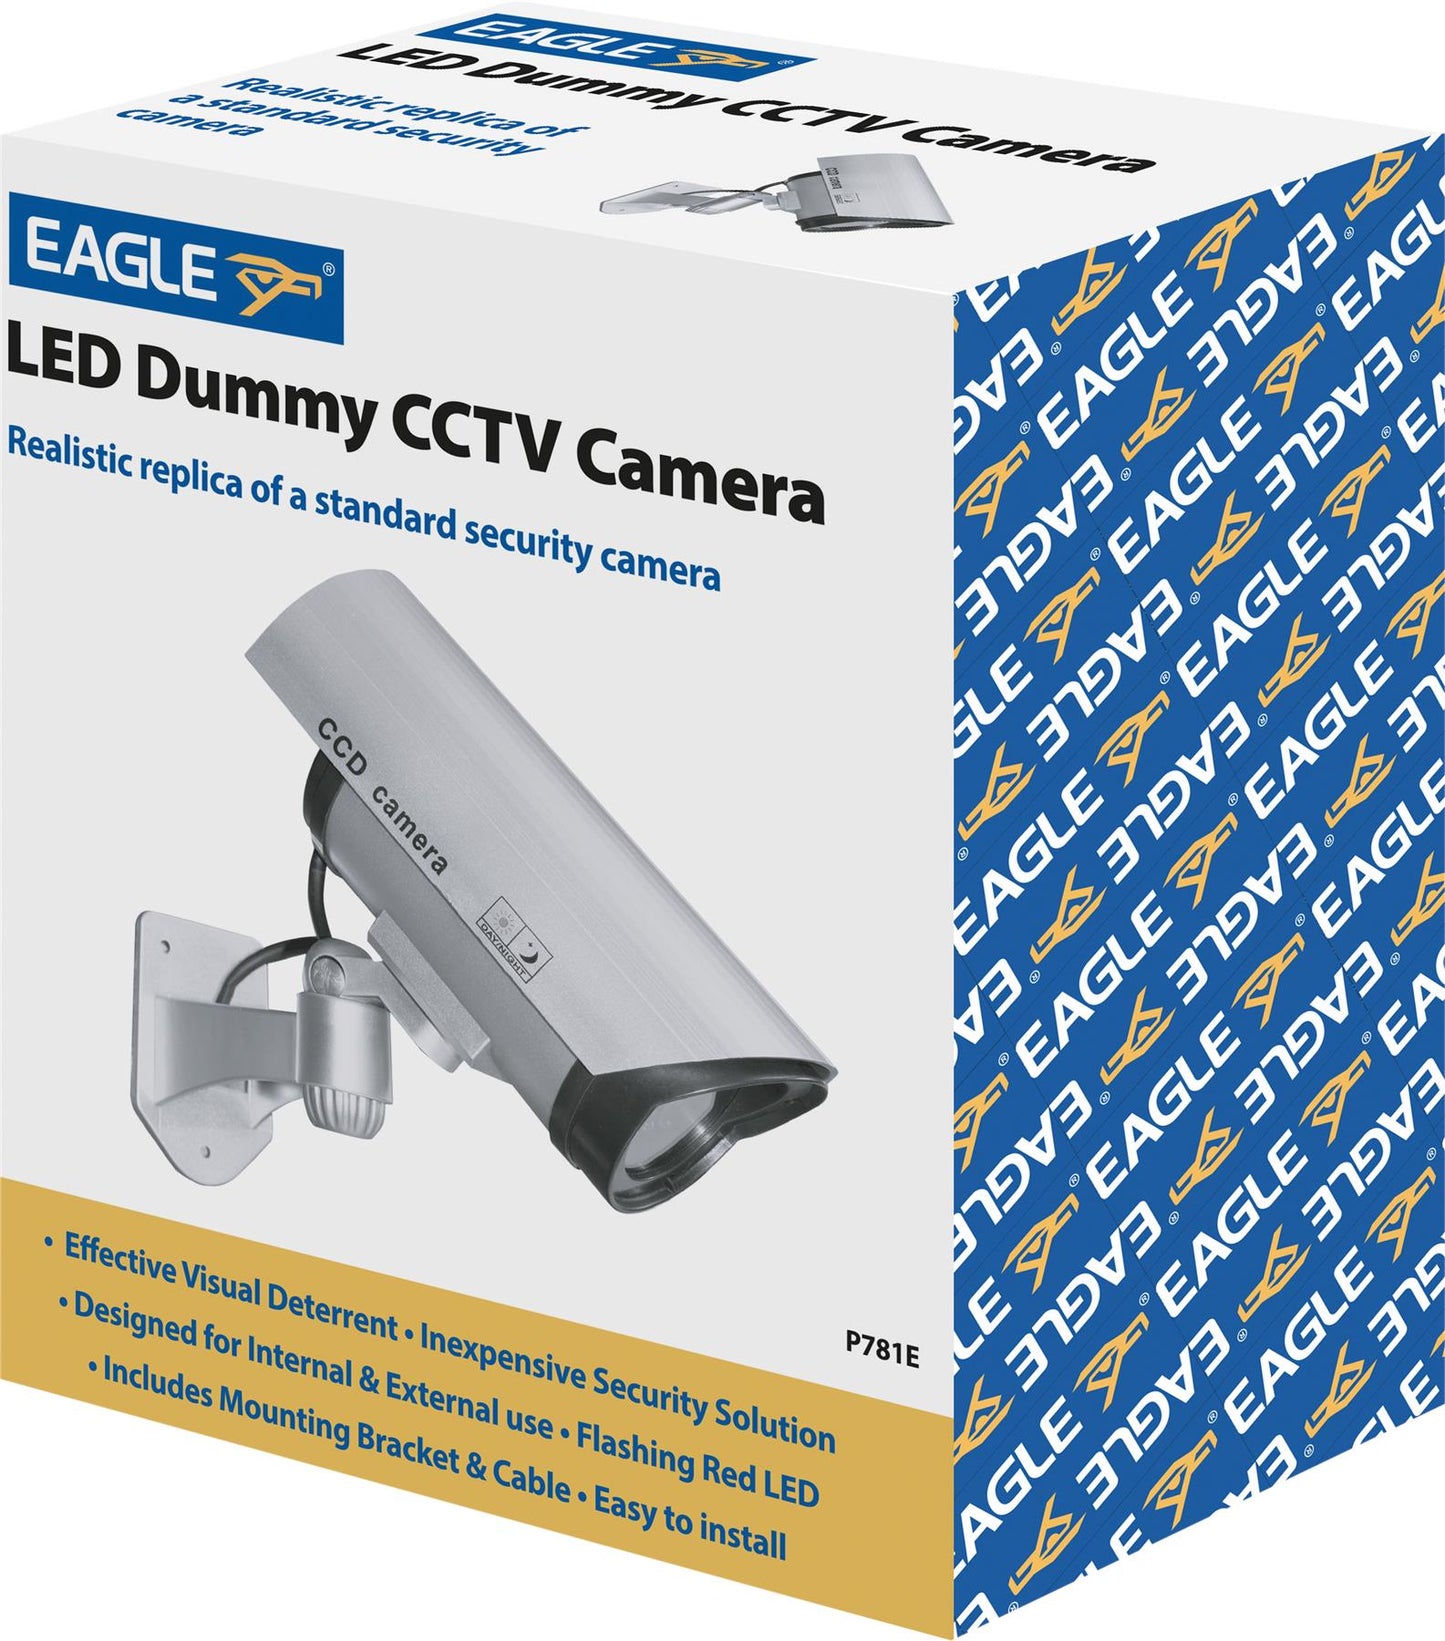 Eagle LED Dummy CCTV Camera